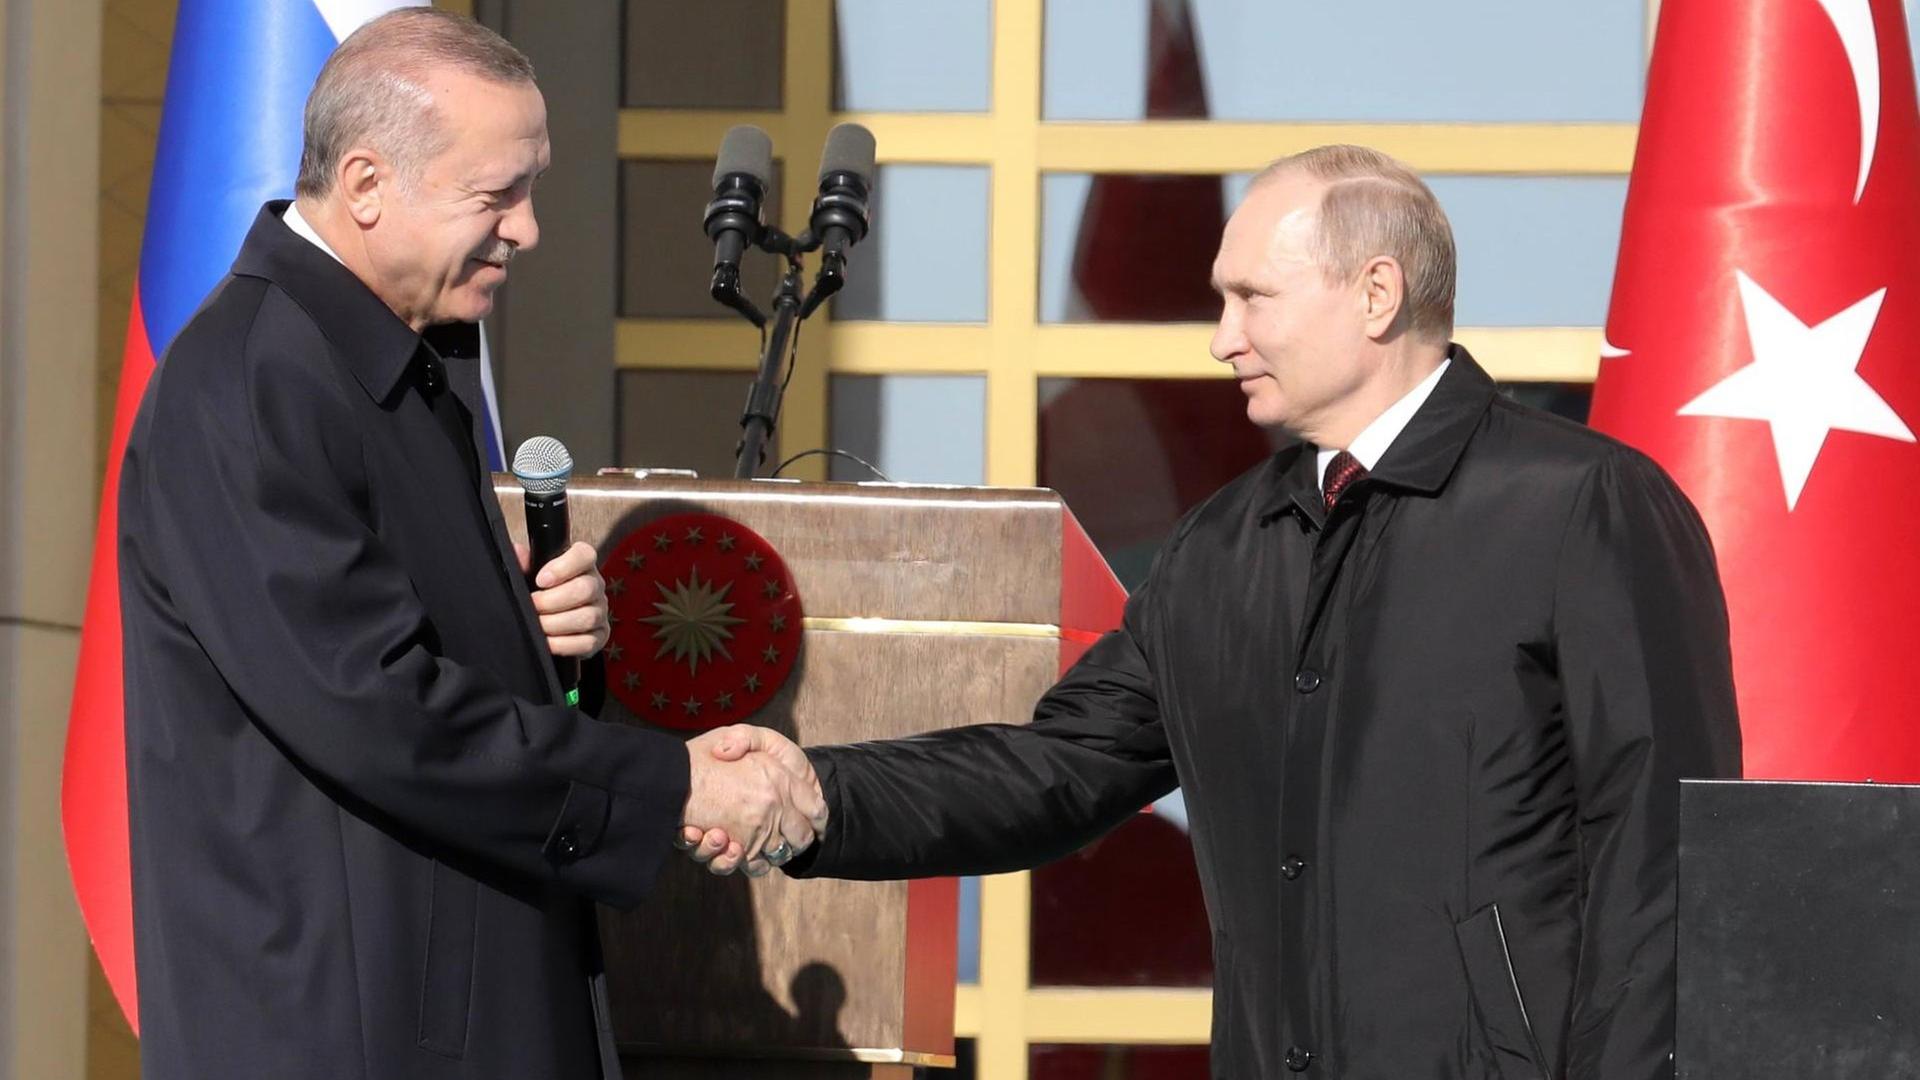 Der türkische Präsident Recep Tayyip Erdogan und Russlands Präsident Wladimir Putin schütteln sich die Hände bei der Auftaktzeremonie für den Bau des ersten Atomkraftwerks auf türkischem Boden, das mit Moskaus Hilfe entsteht